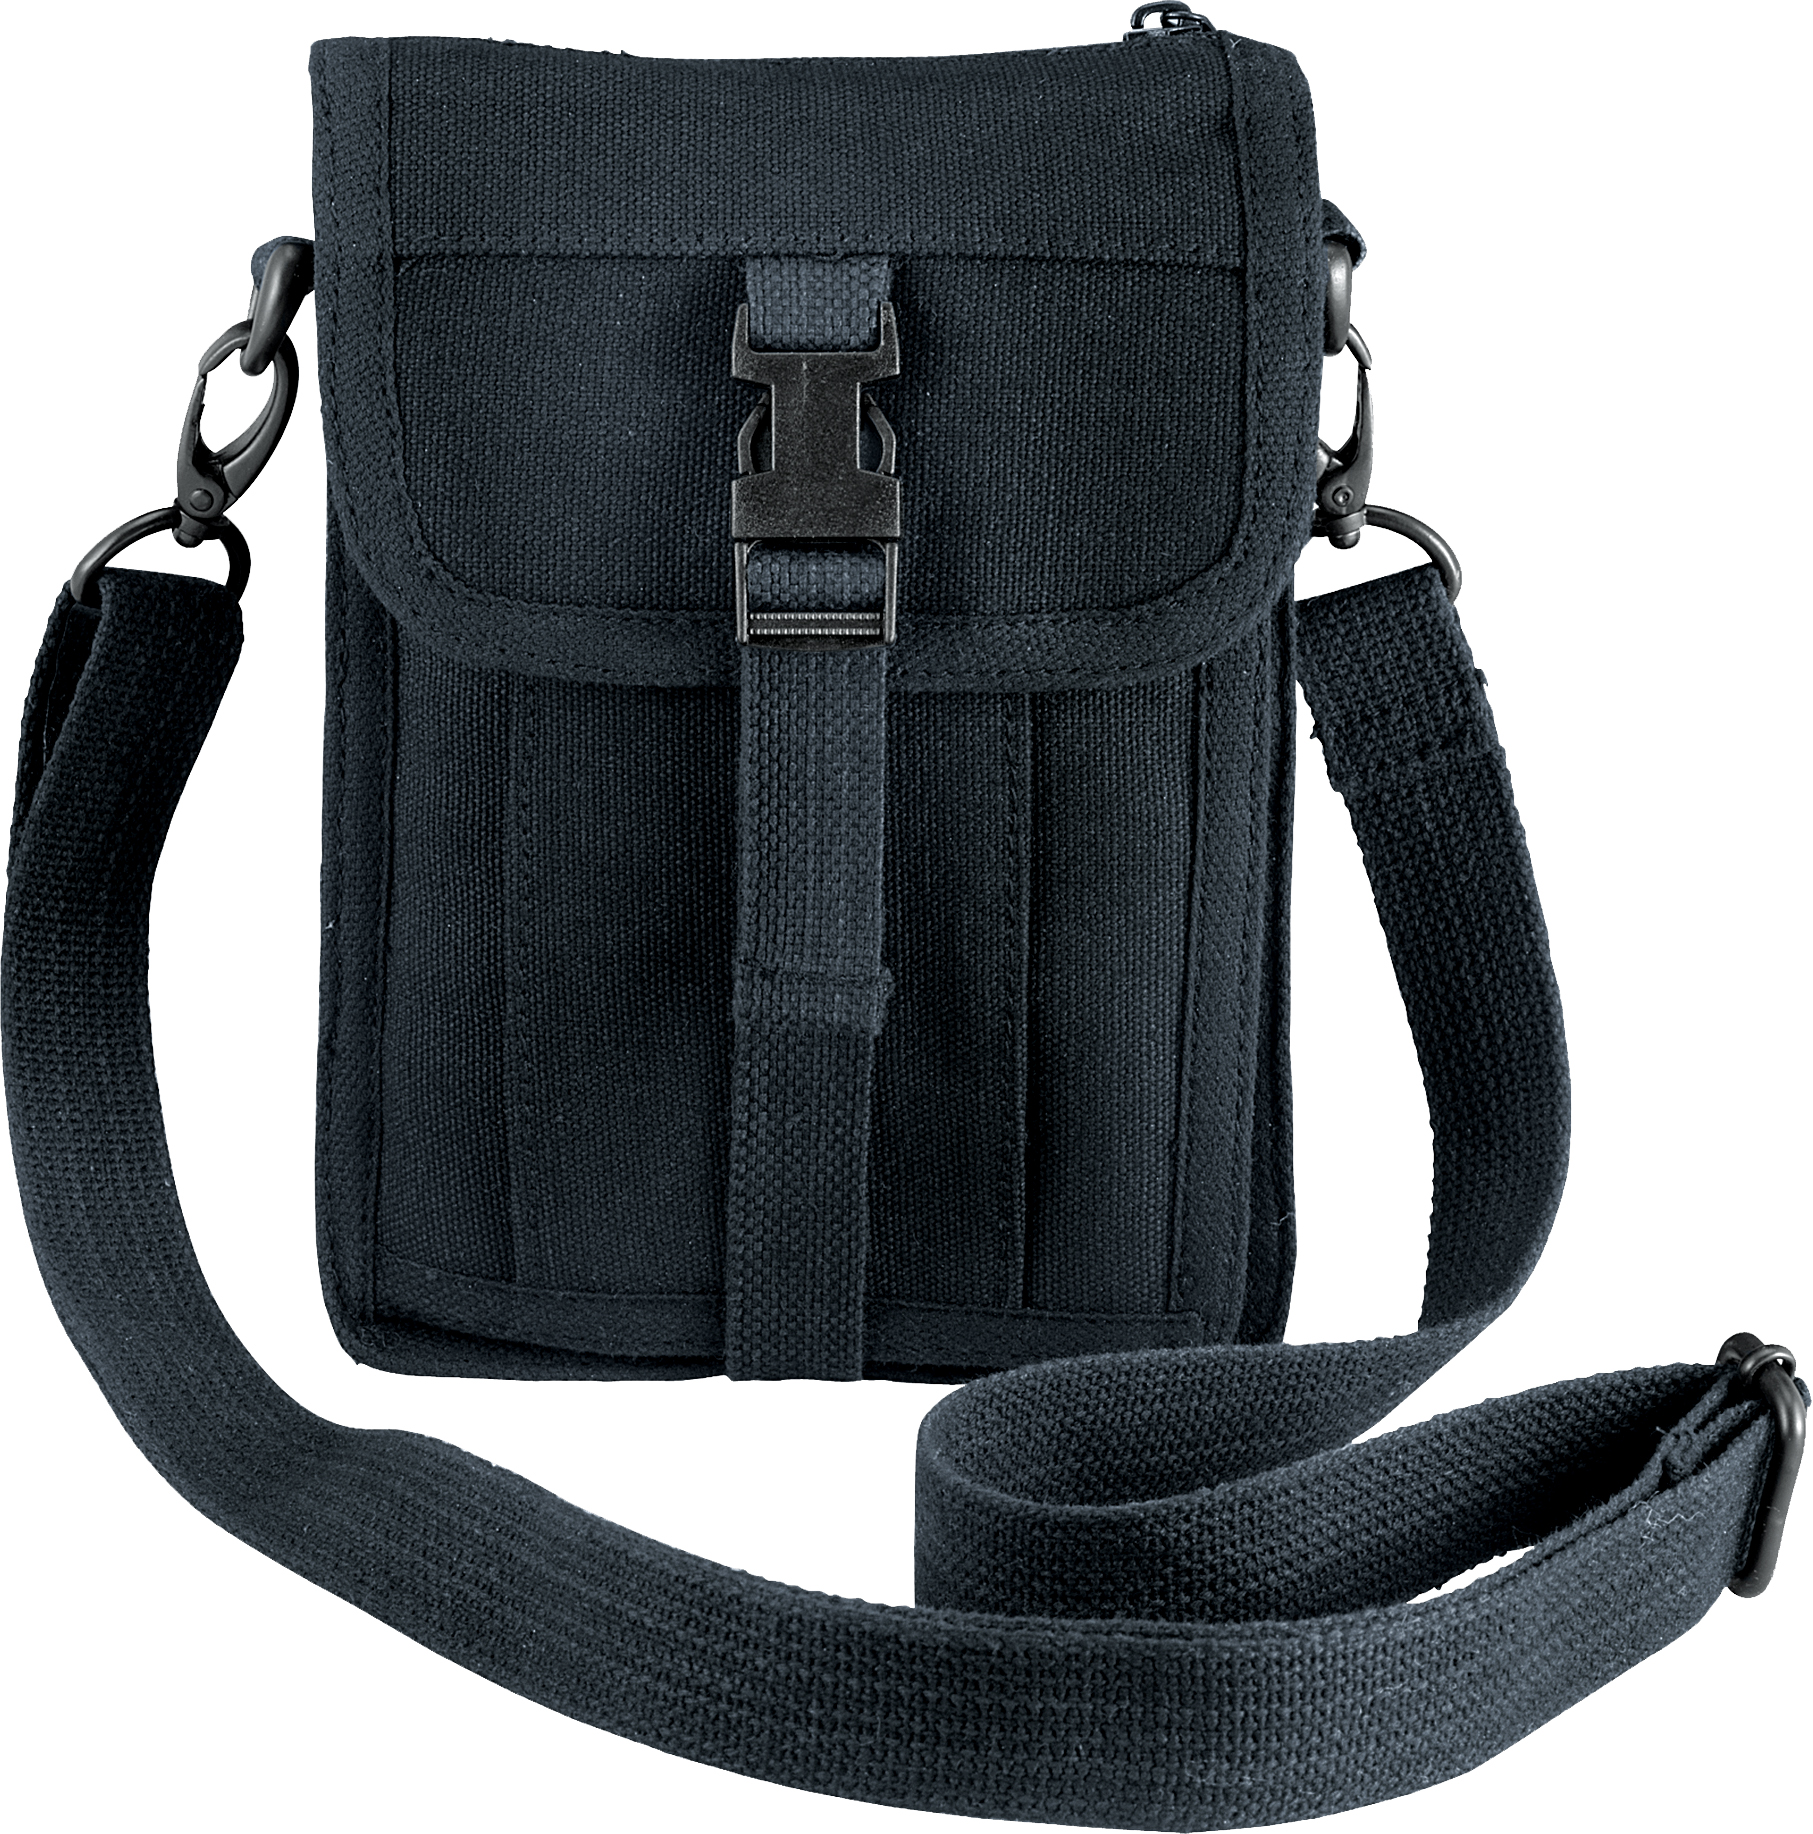 Rothco Black Venturer Travel Portfolio Bag